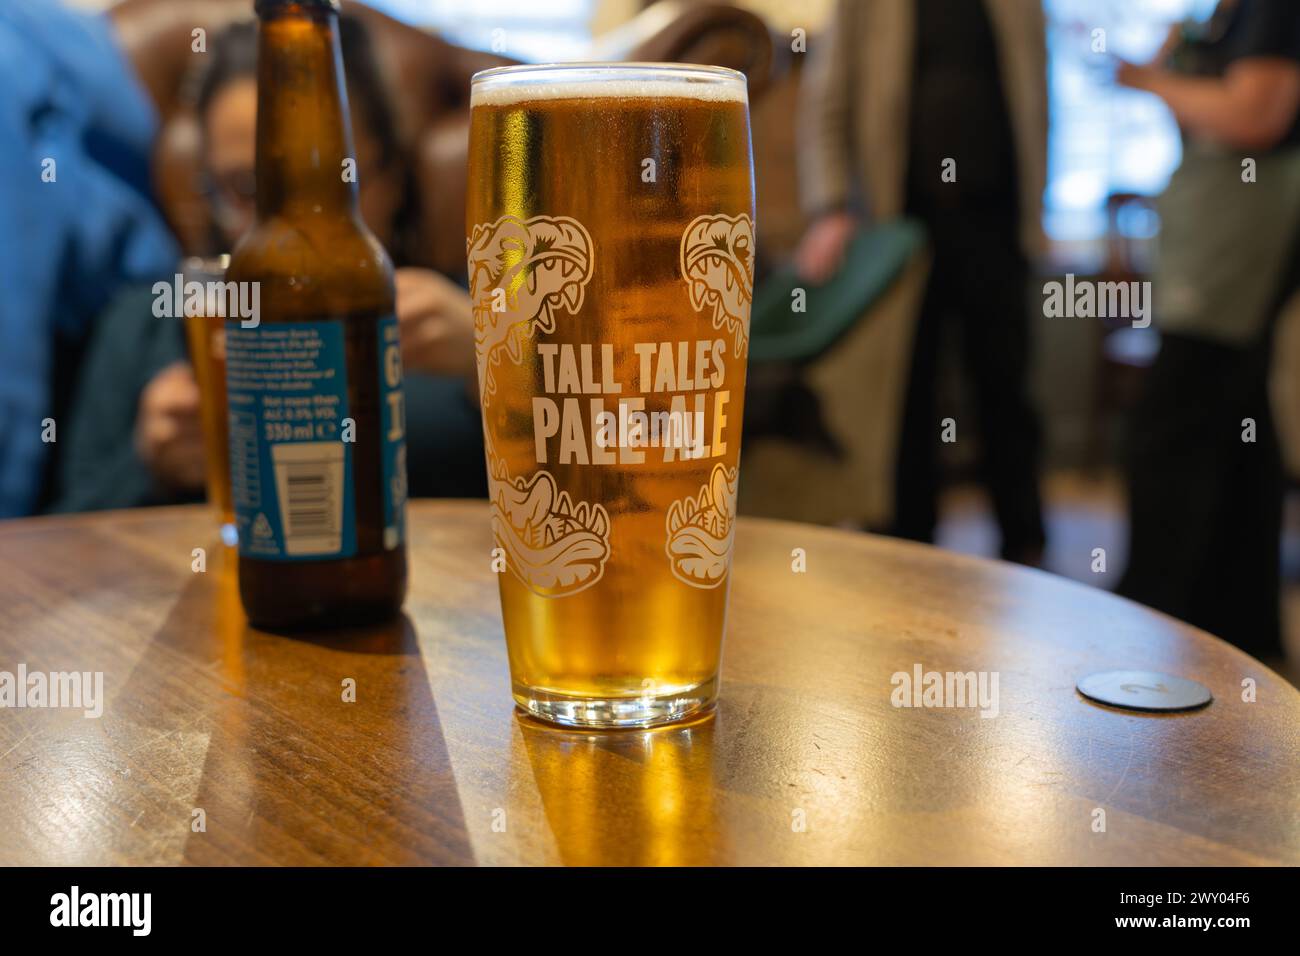 Une Tall Tales pale Ale dans un verre à pinte sur une table dans un pub.Tall Tales est la propriété de Butcombe Brewery, propriété ultime du Liberation Group. Angleterre Banque D'Images